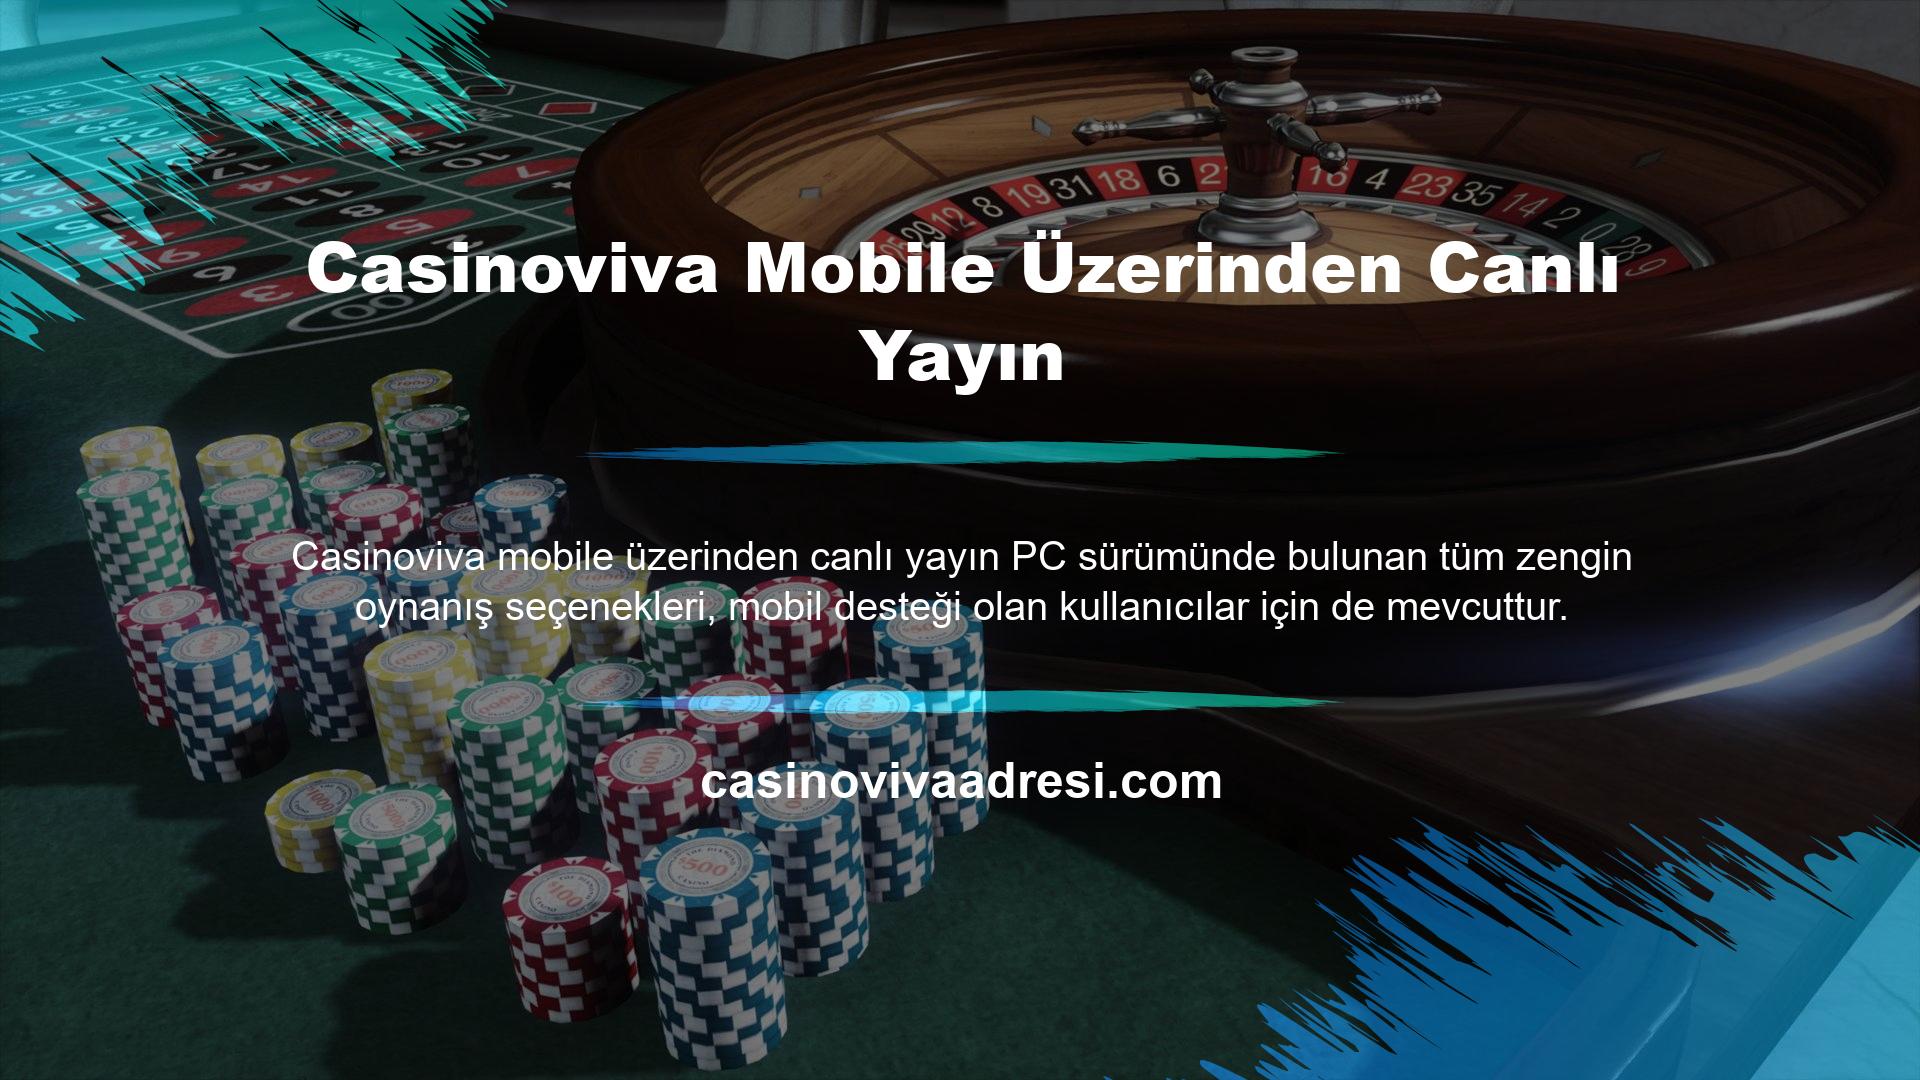 Casinoviva Mobile Üzerinden Canlı Yayın